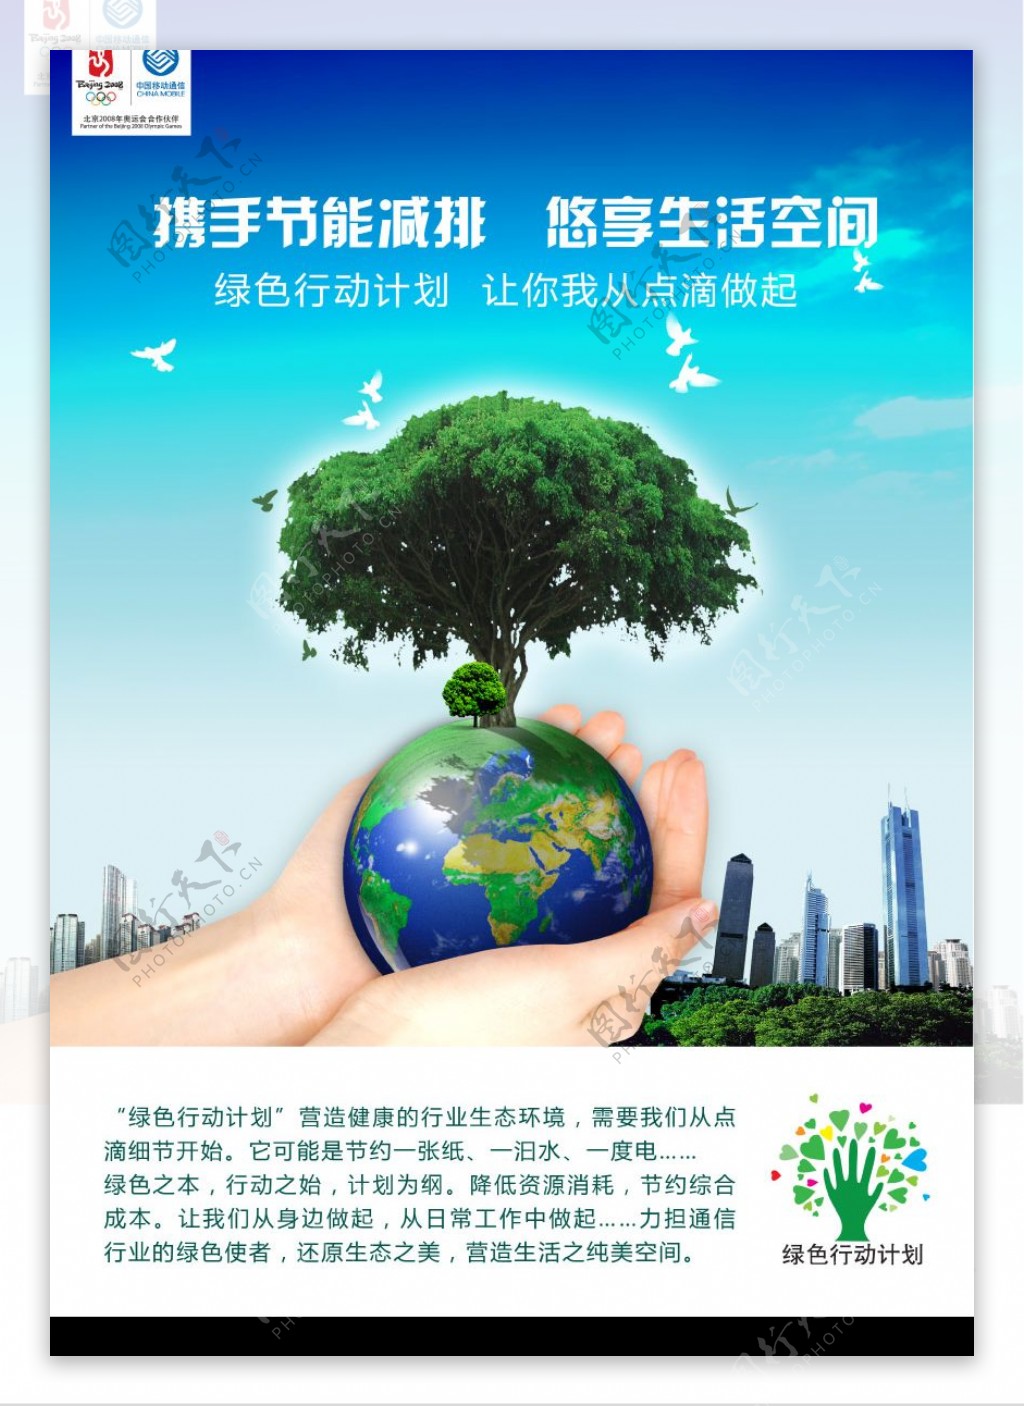 绿色行动计划公益广告图片